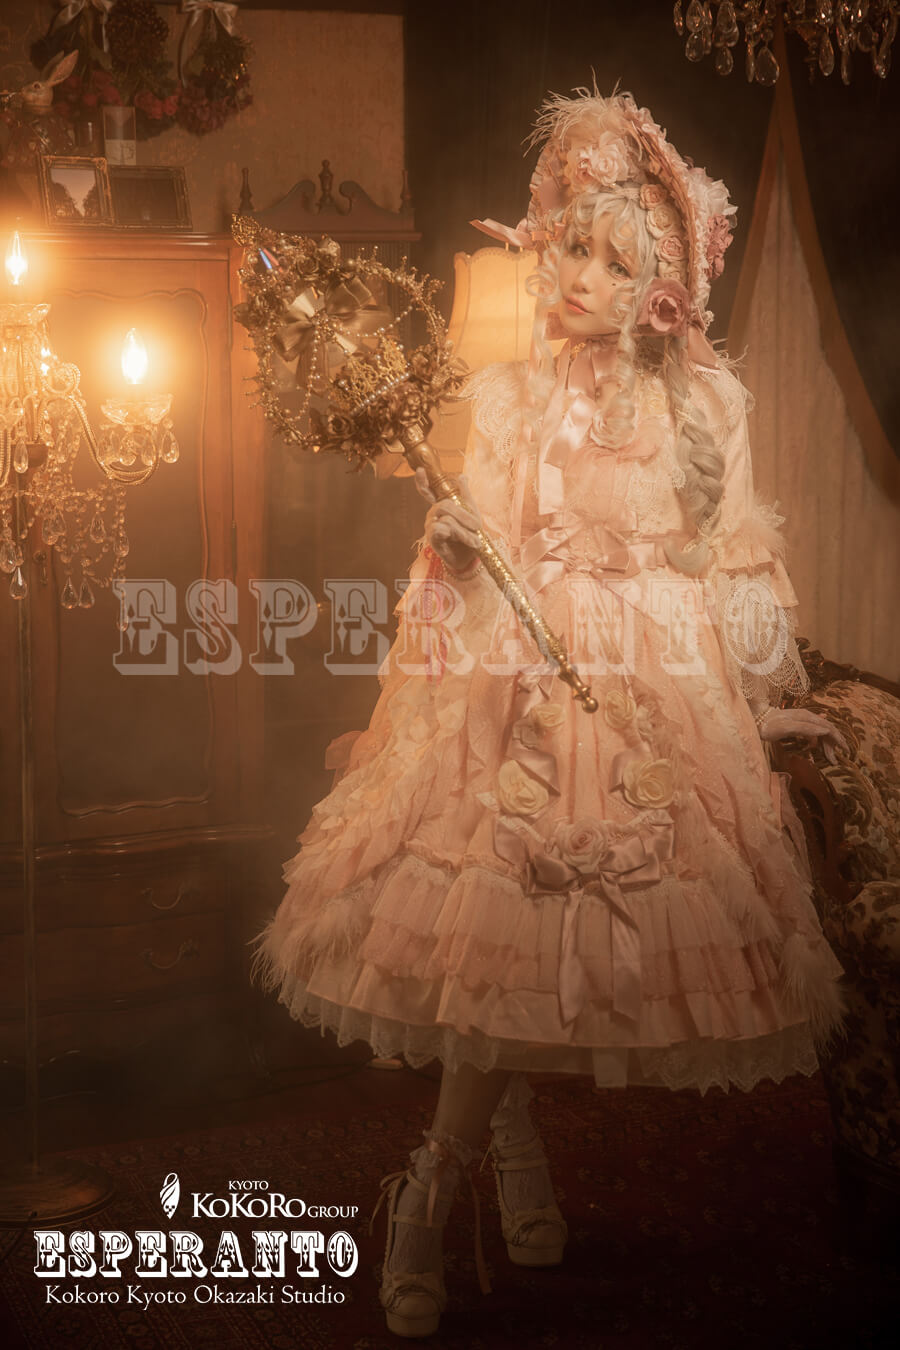 EpressL×青木美佐子さんコラボのドレスロリータ衣装で楽しむロリータファッションフォト撮影